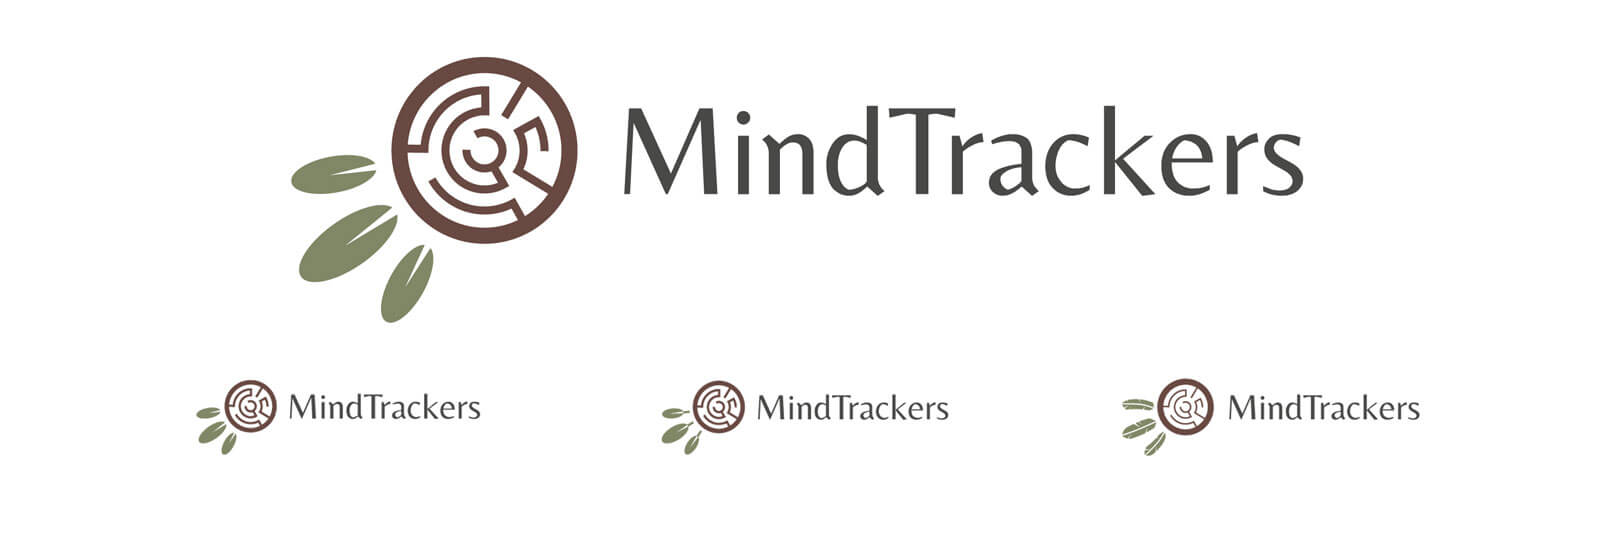 mind-trackers-illustrator-options